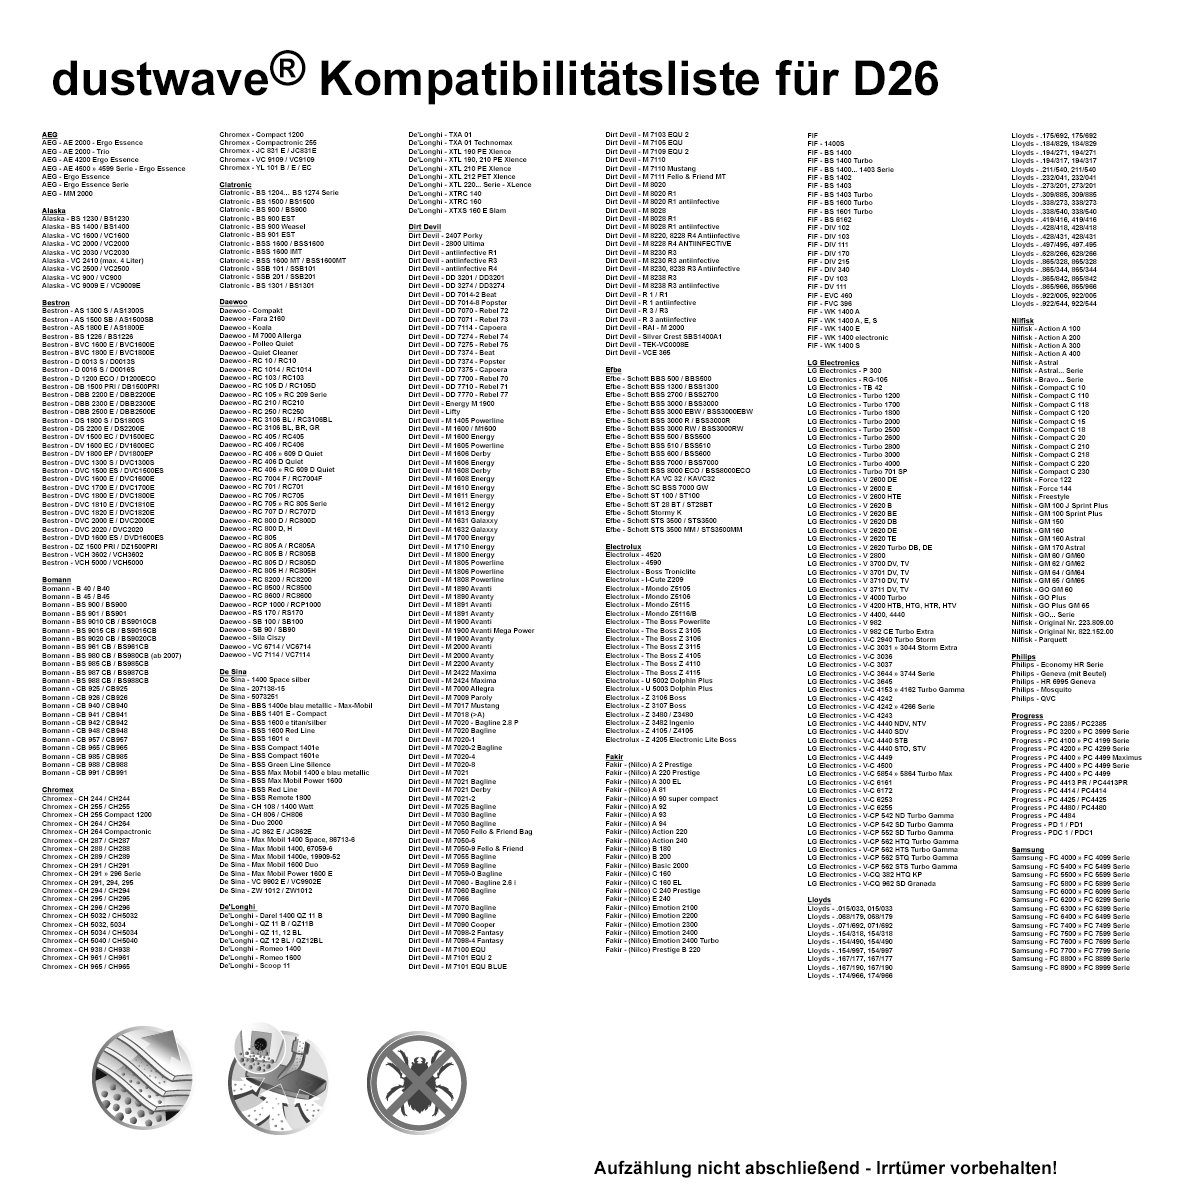 1 1 Staubsaugerbeutel Dustwave Test-Set, Comfee 1 700WR, zuschneidbar) - (ca. Hepa-Filter für passend 15x15cm Test-Set, + Staubsaugerbeutel CBB St.,